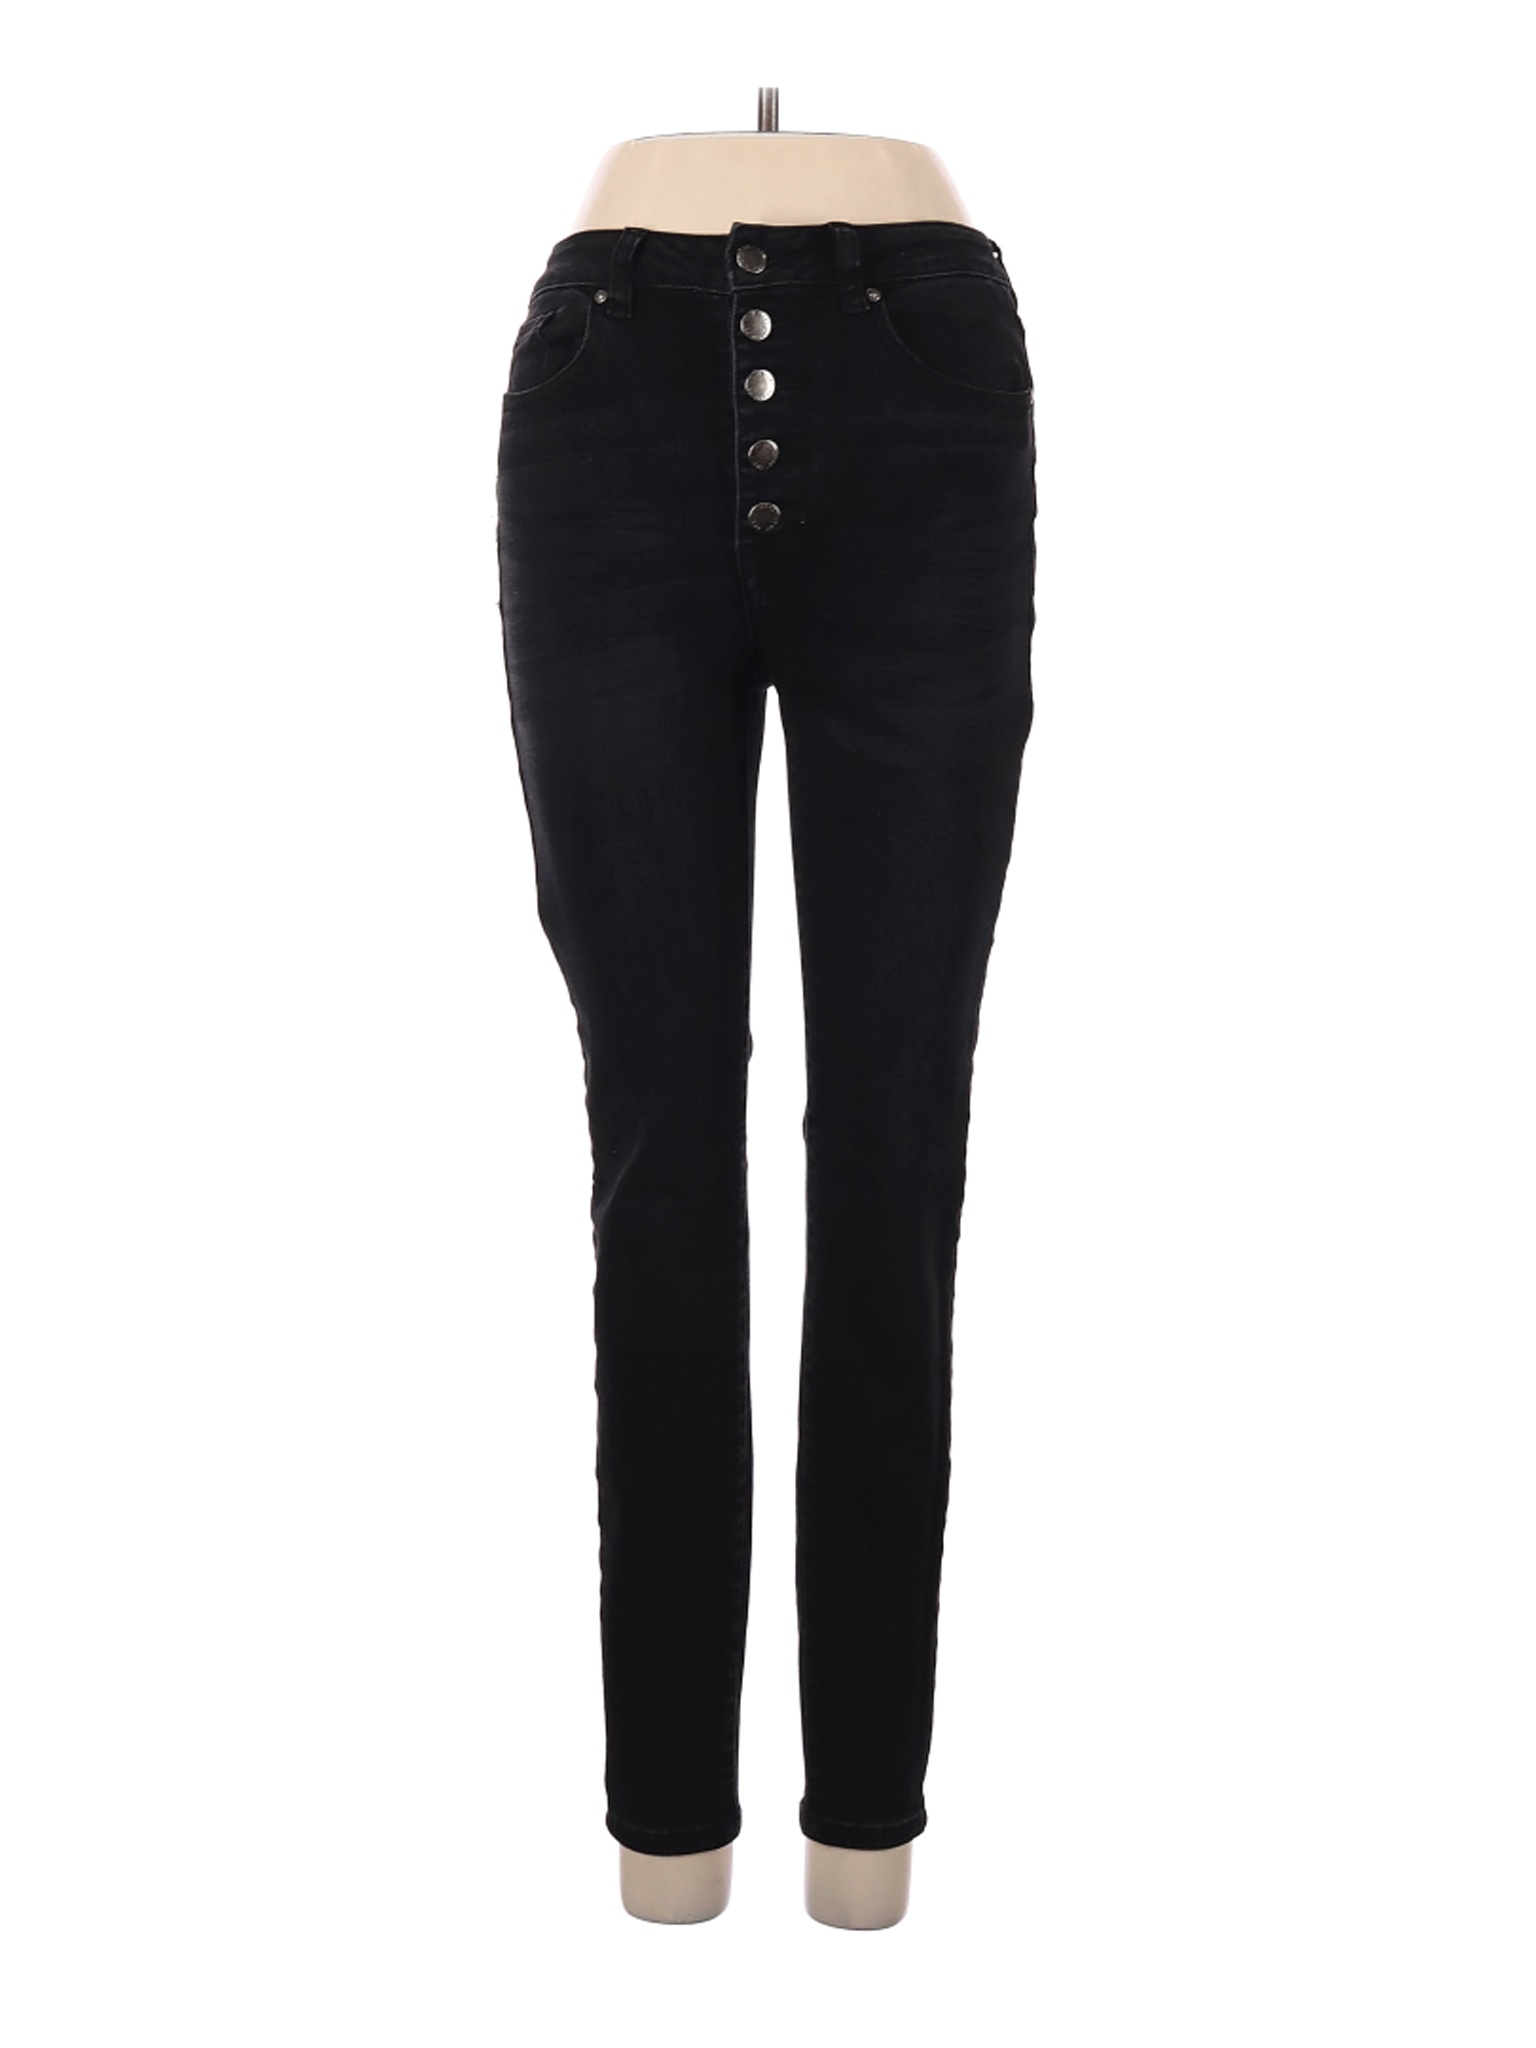 Velvet Heart Women Black Jeans 26W | eBay